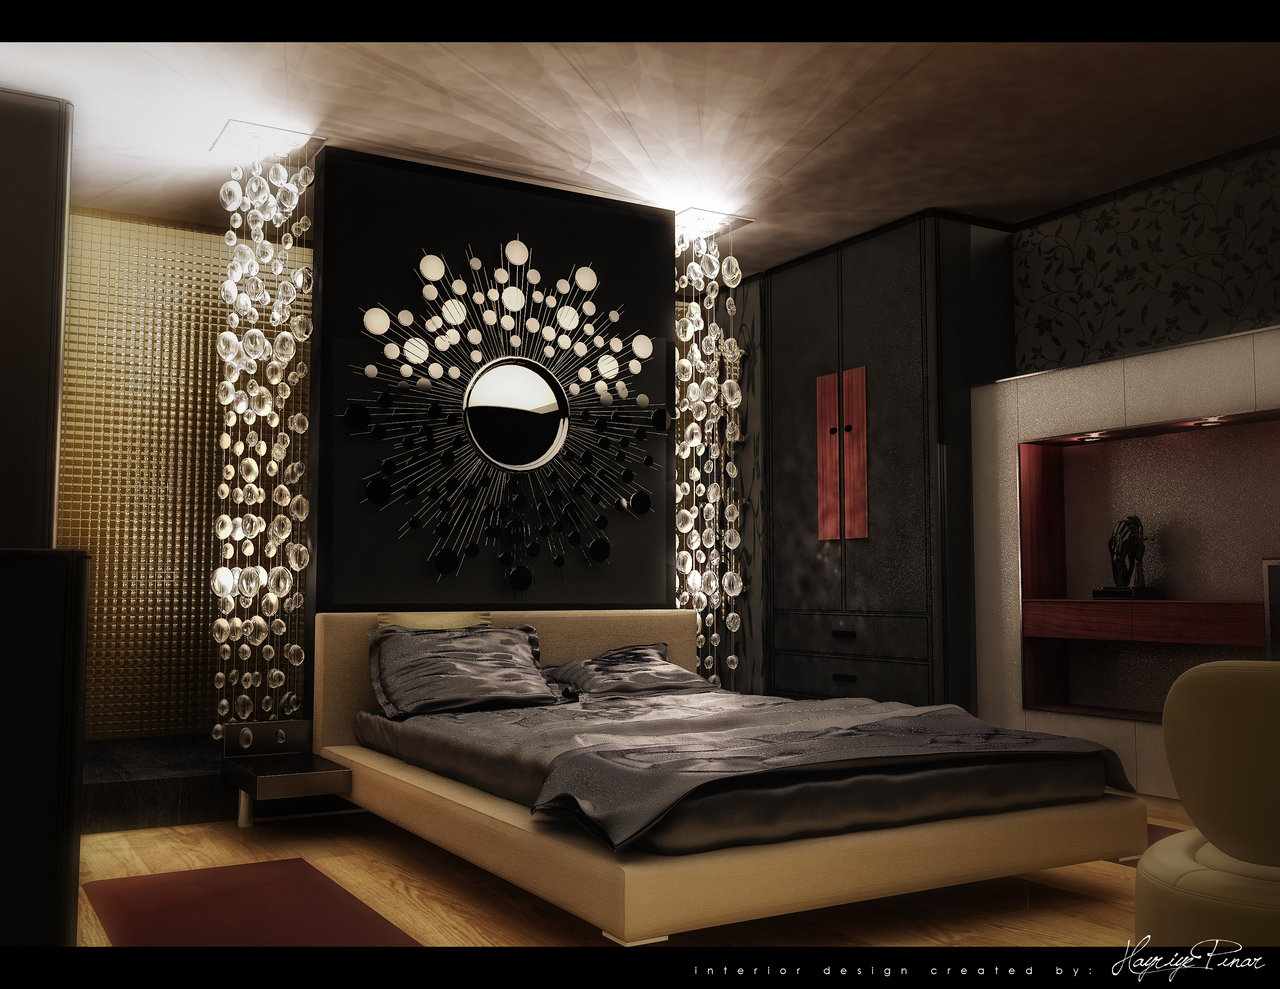 ikea Bedroom ideas - ikea Bedroom 2014 ideas ~ Room Design Ideas